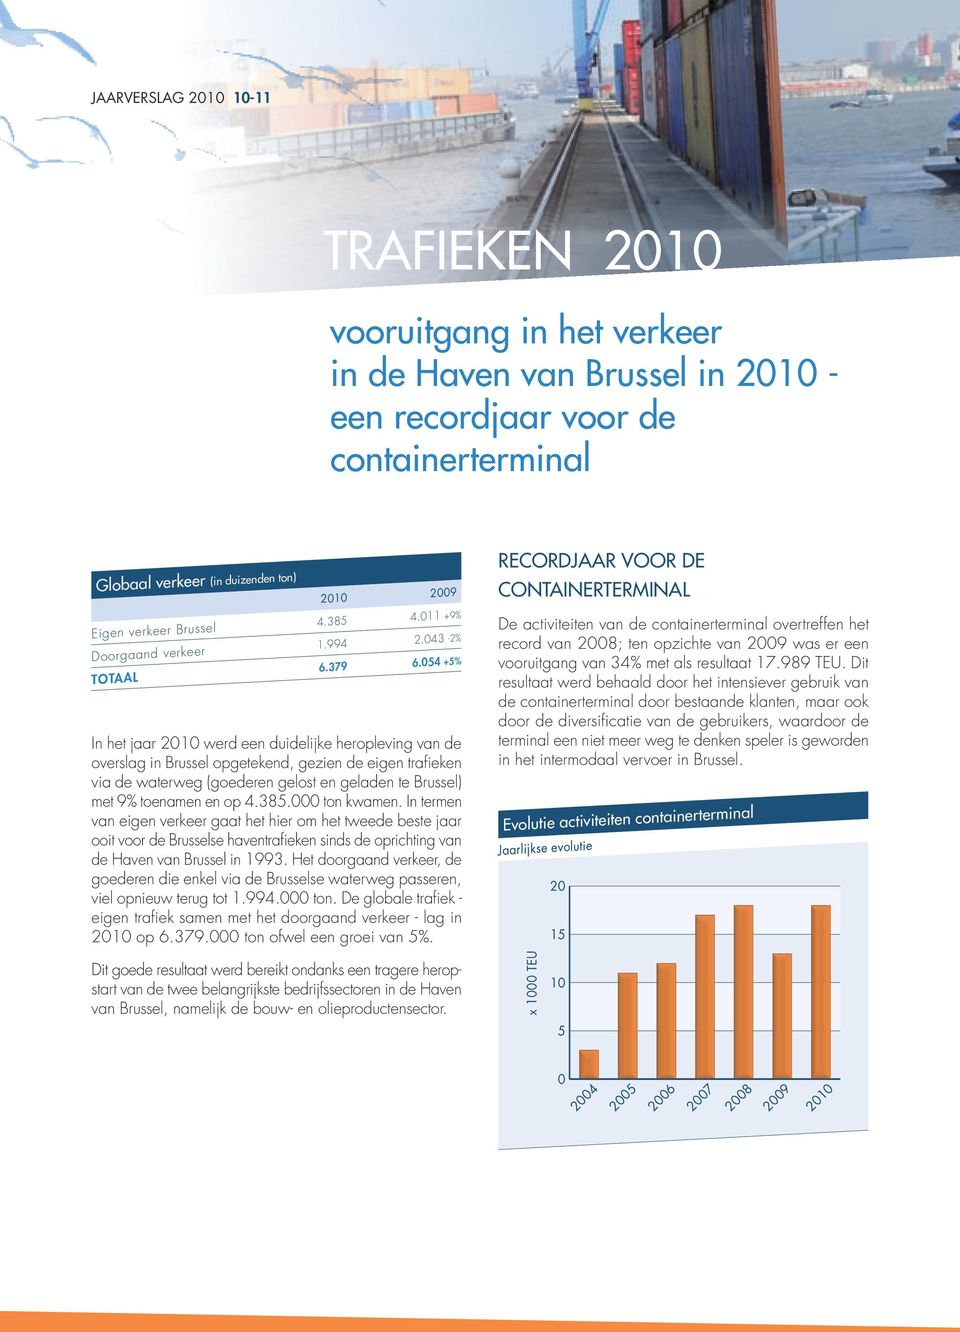 054 +5% In het jaar 2010 werd een duidelijke heropleving van de overslag in Brussel opgetekend, gezien de eigen trafieken via de waterweg (goederen gelost en geladen te Brussel) met 9% toenamen en op